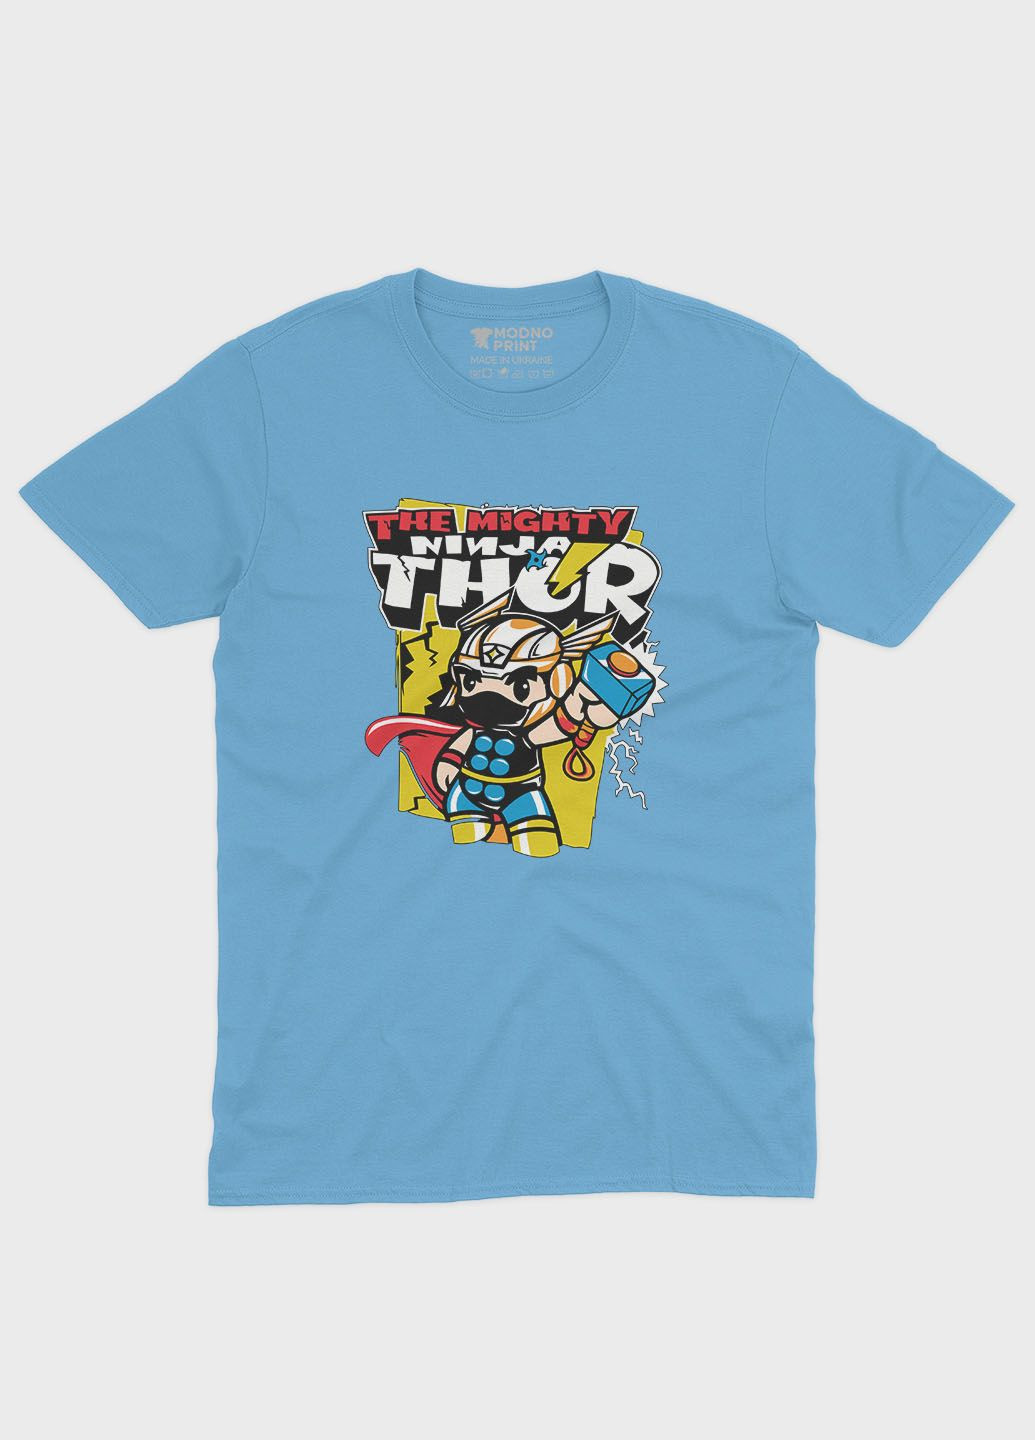 Голубая демисезонная футболка для мальчика с принтом супергероя - тор (ts001-1-lbl-006-024-001-b) Modno